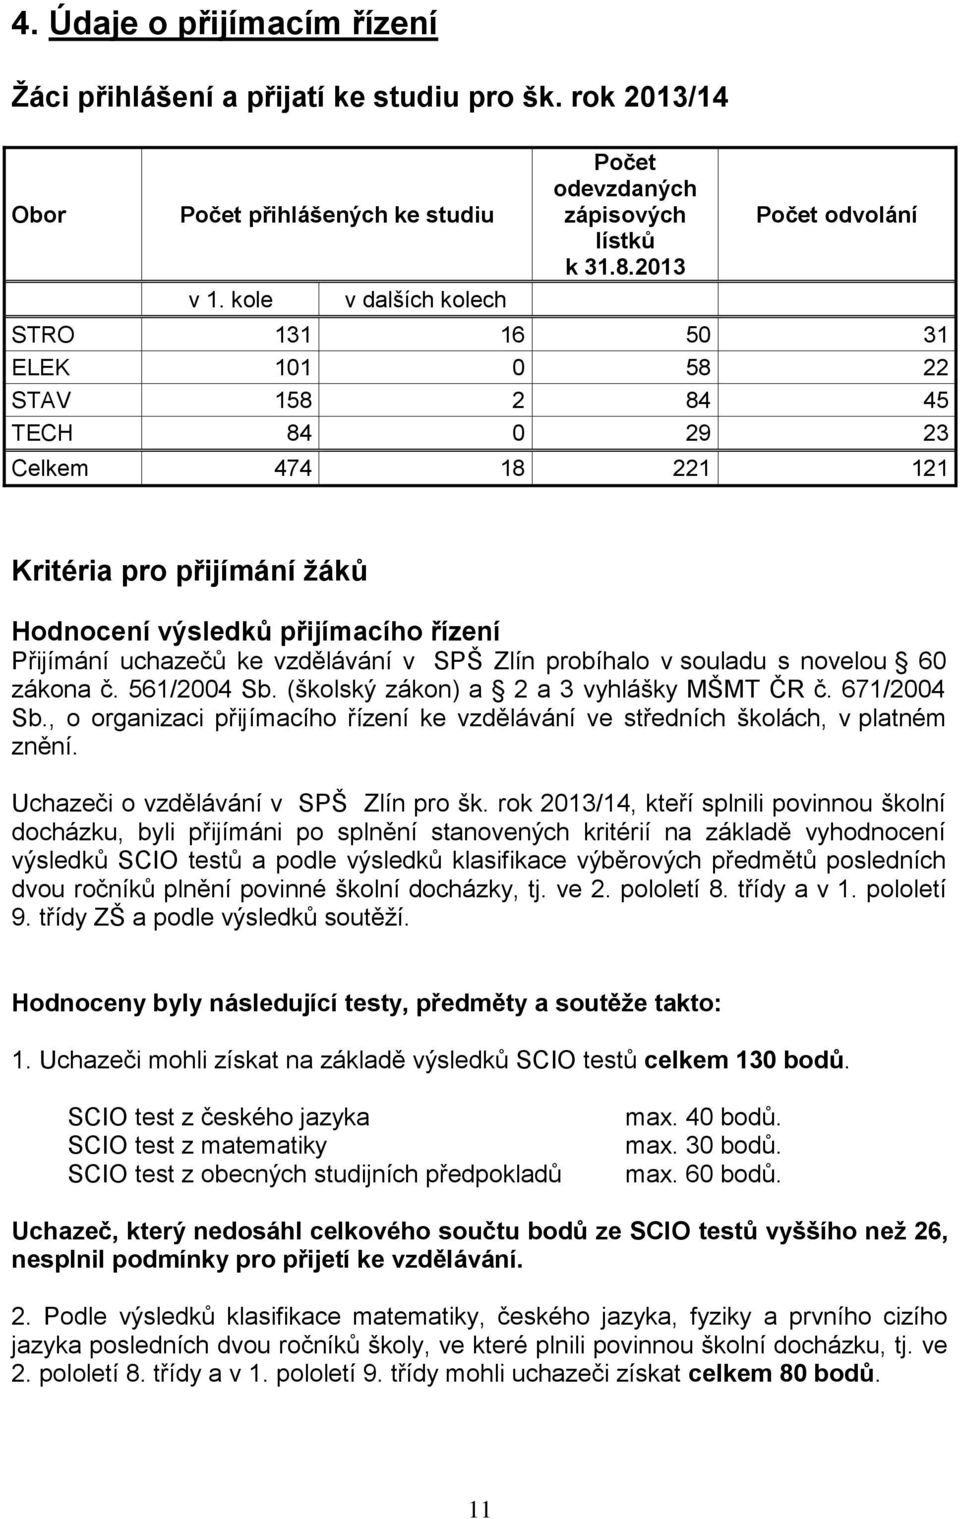 vzdělávání v SPŠ Zlín probíhalo v souladu s novelou 60 zákona č. 561/2004 Sb. (školský zákon) a 2 a 3 vyhlášky MŠMT ČR č. 671/2004 Sb.